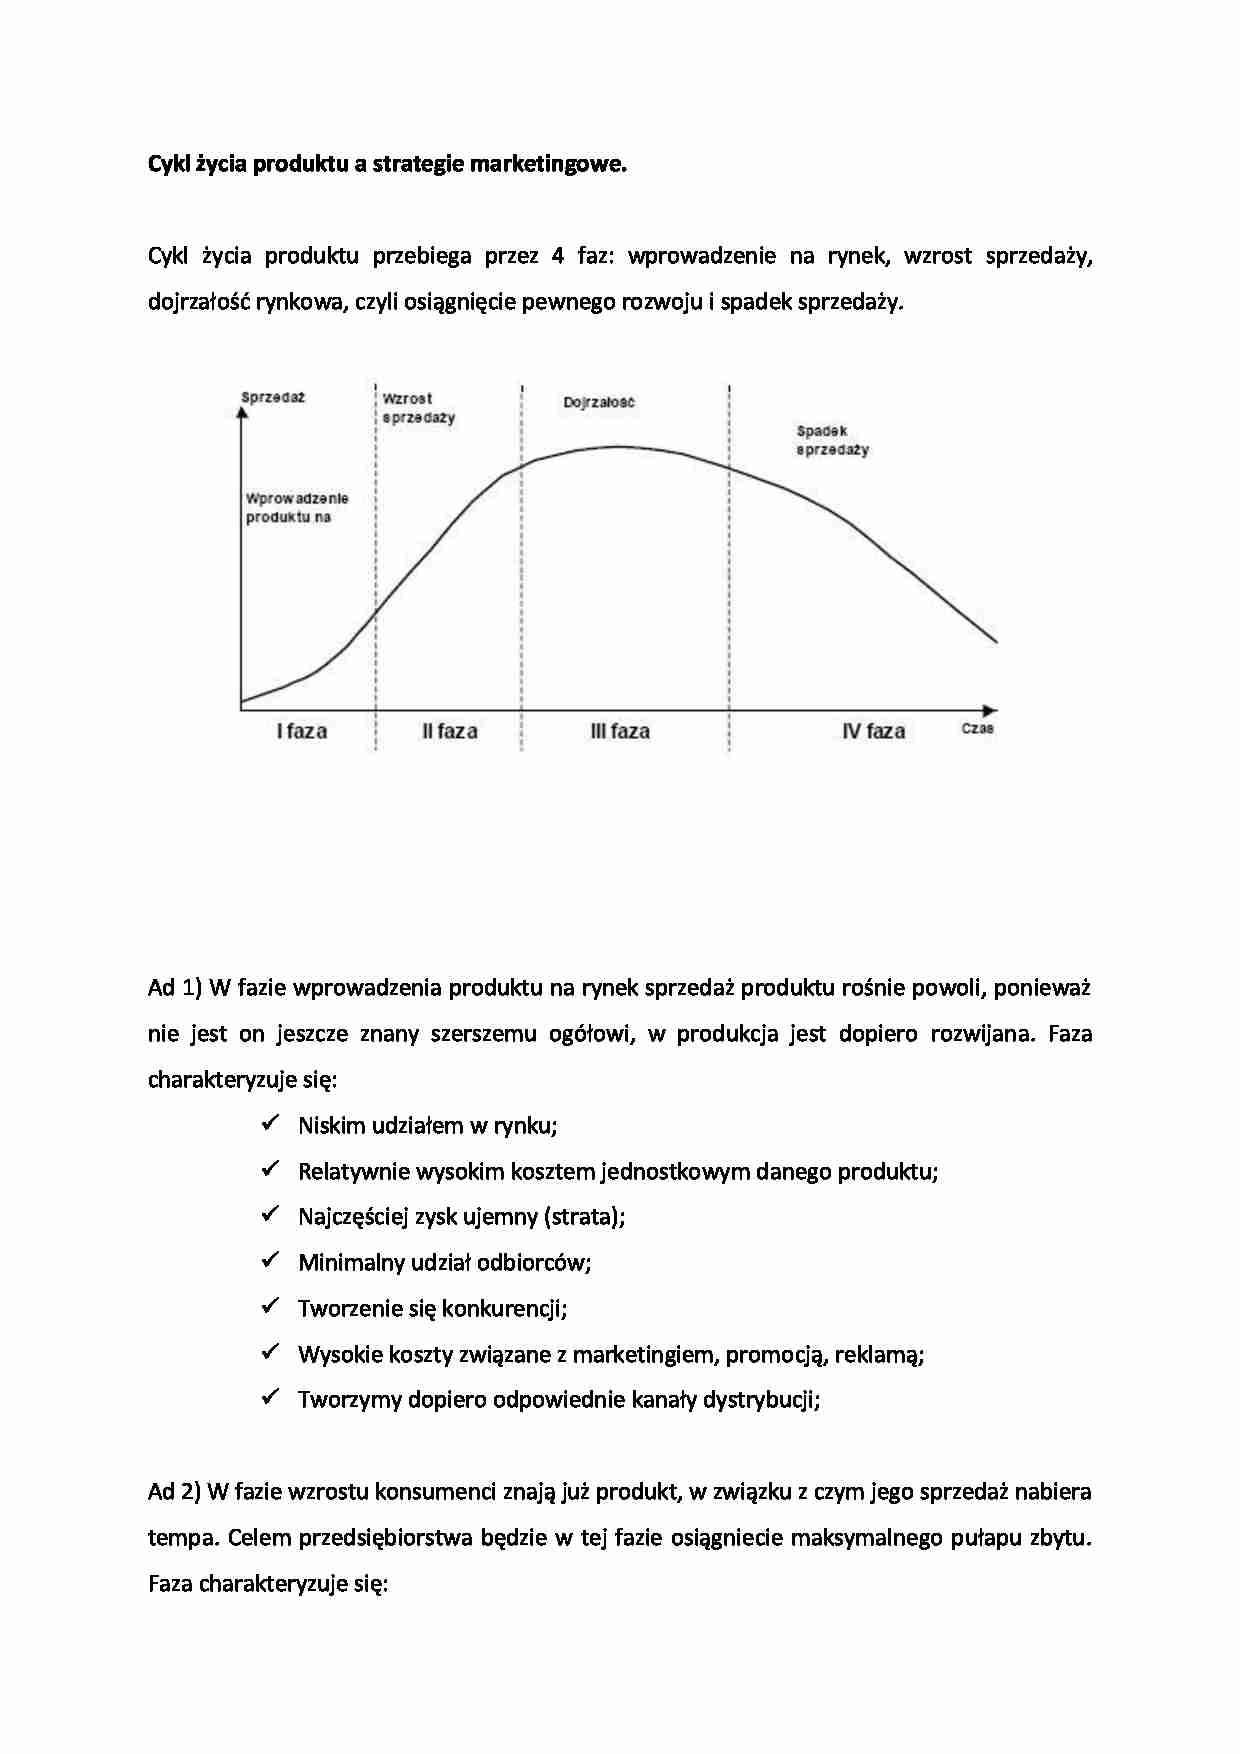 Cykl życia produktu a strategie marketingowe  - omówienie - strona 1